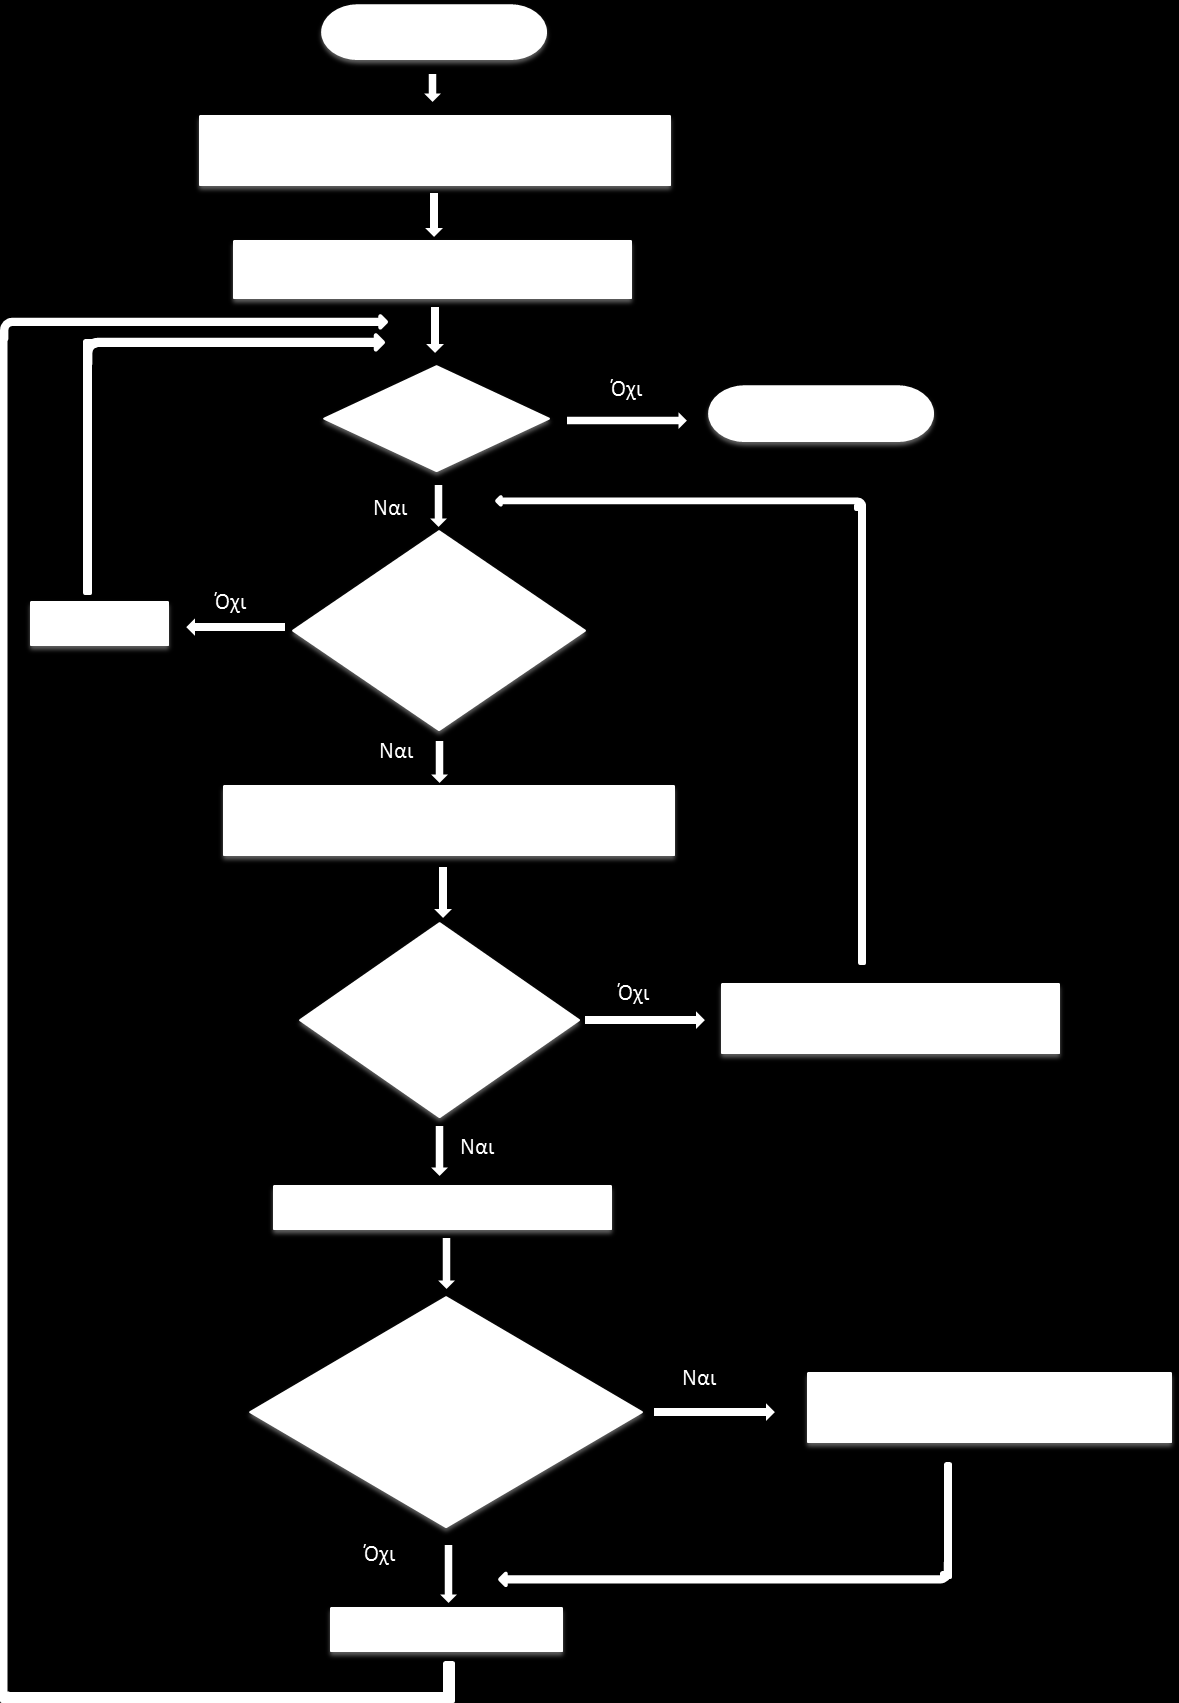 Στο τέταρτο διάγραμμα παρουσιάζουμε τον γενικό αλγόριθμο που χρησιμοποιείται για τη μεταφορά των «αυτόματων» φορτίων («Αυτόματα» ονομάζονται τα φορτία